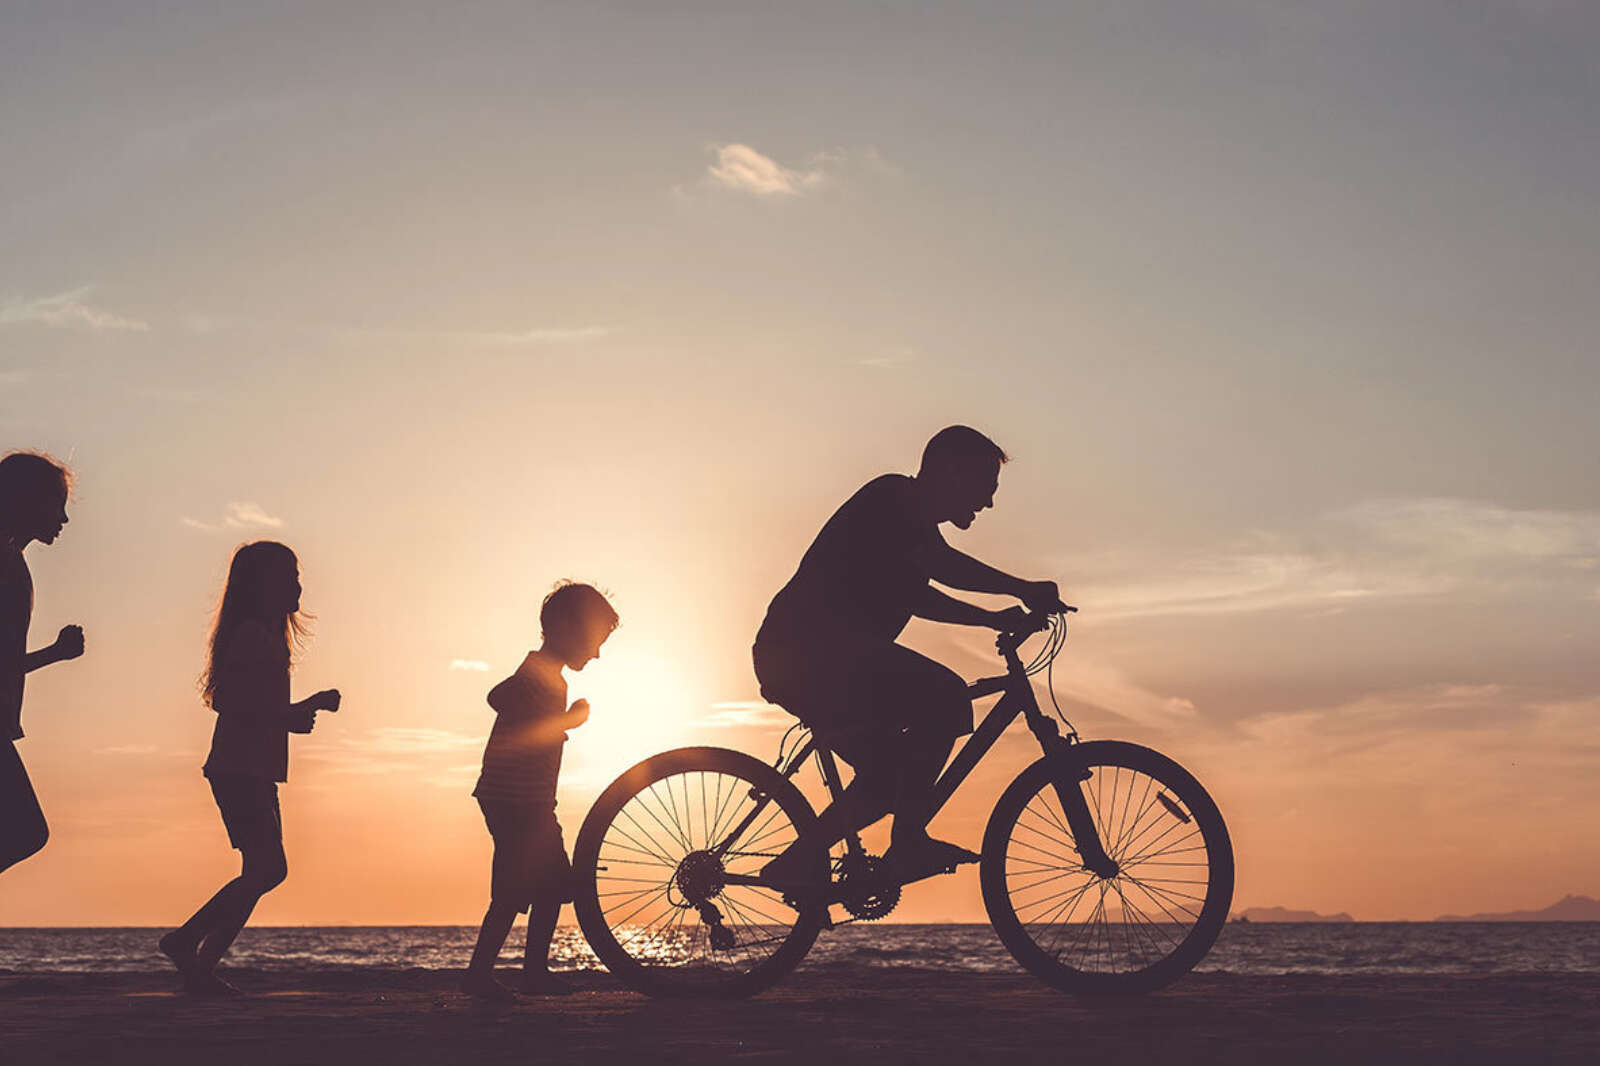 Children following a man riding a bike at sunset